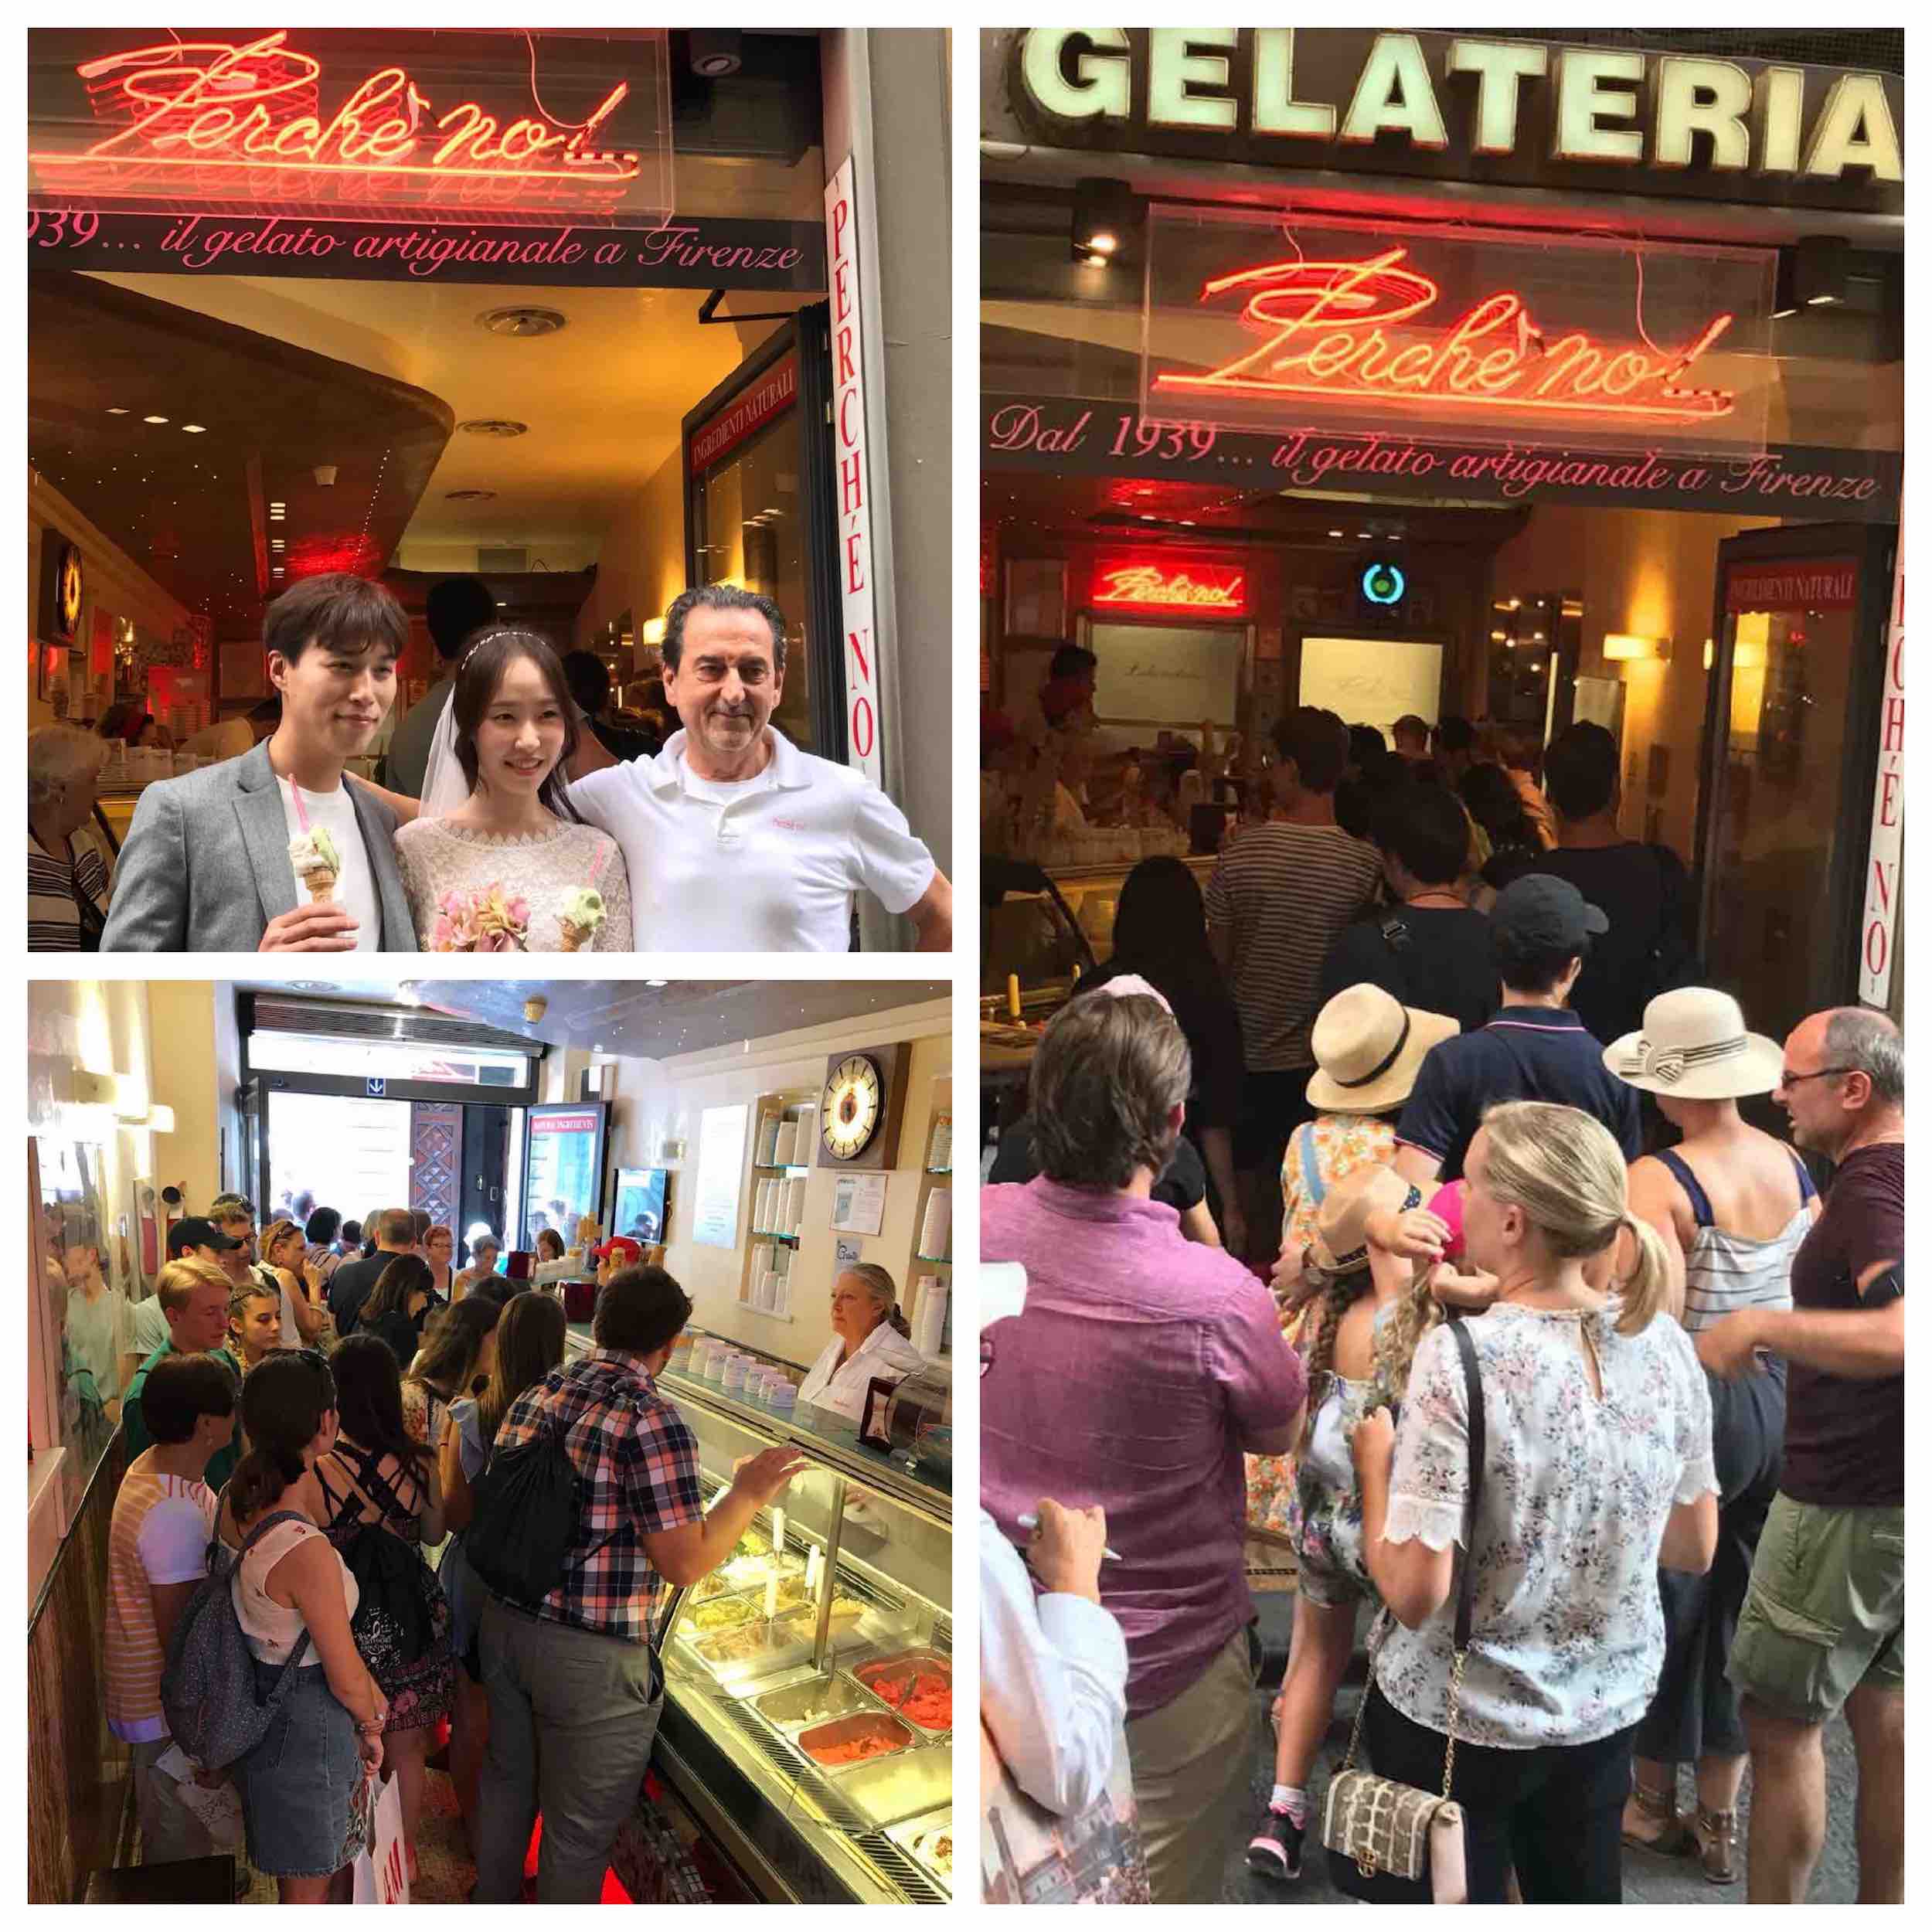 La gelateri Perchè No! di Firenze è uno dei 10 migliori luoghi al mondo dove mangiare il gelato secondo molte riviste internazionali